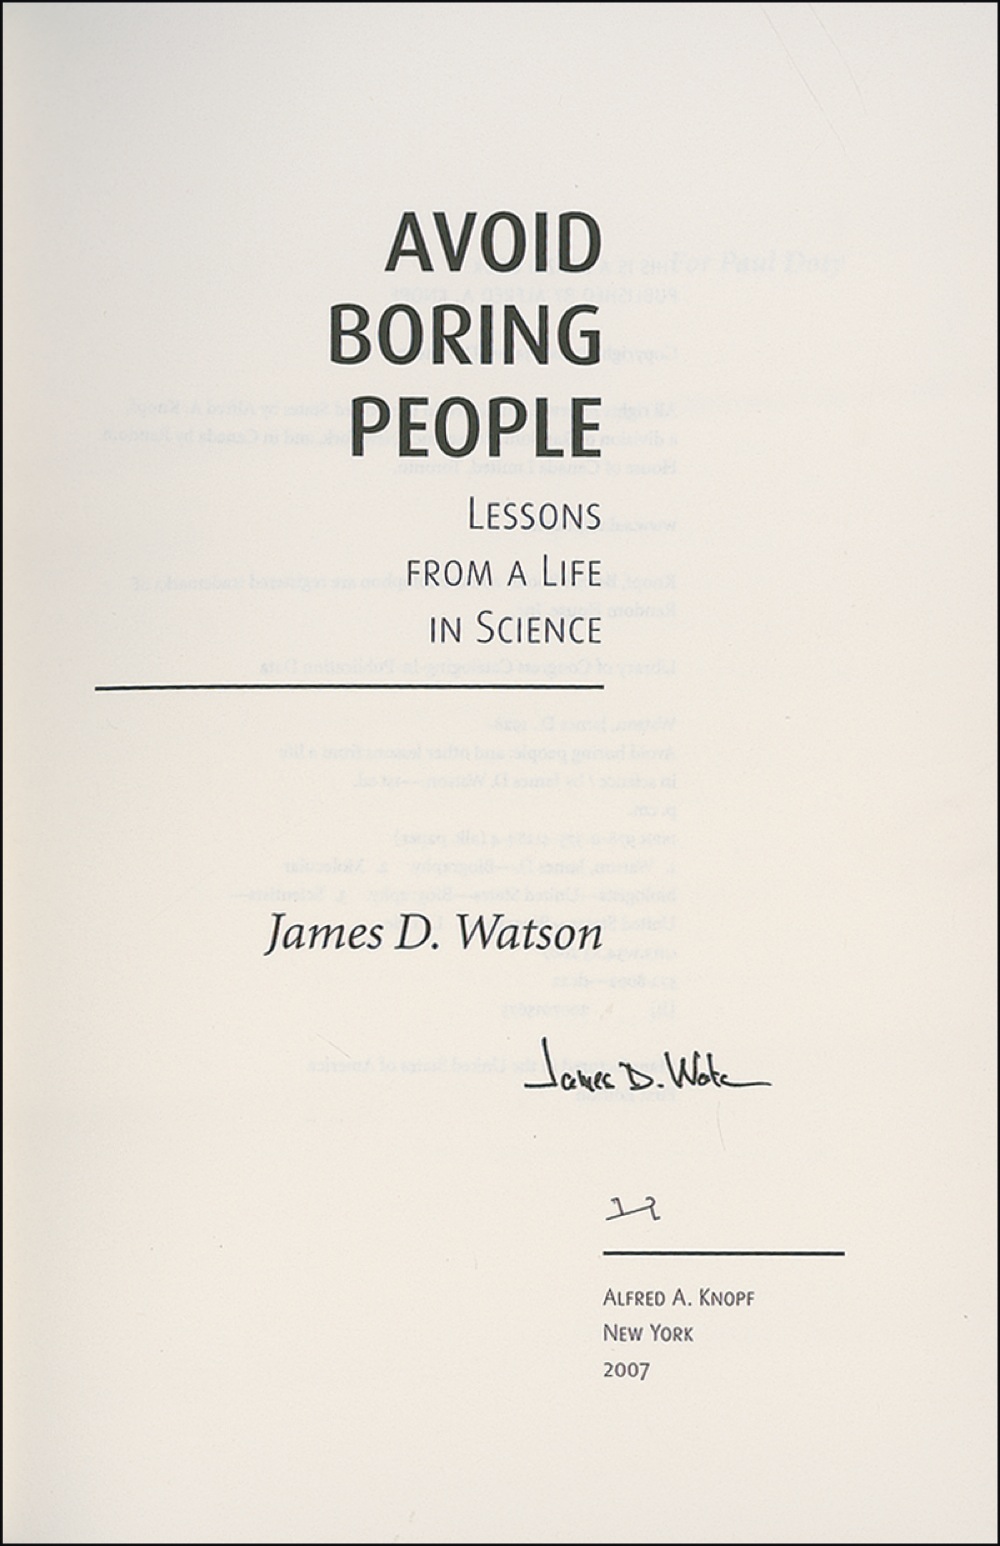 Lot #319 James Watson and Francis Crick